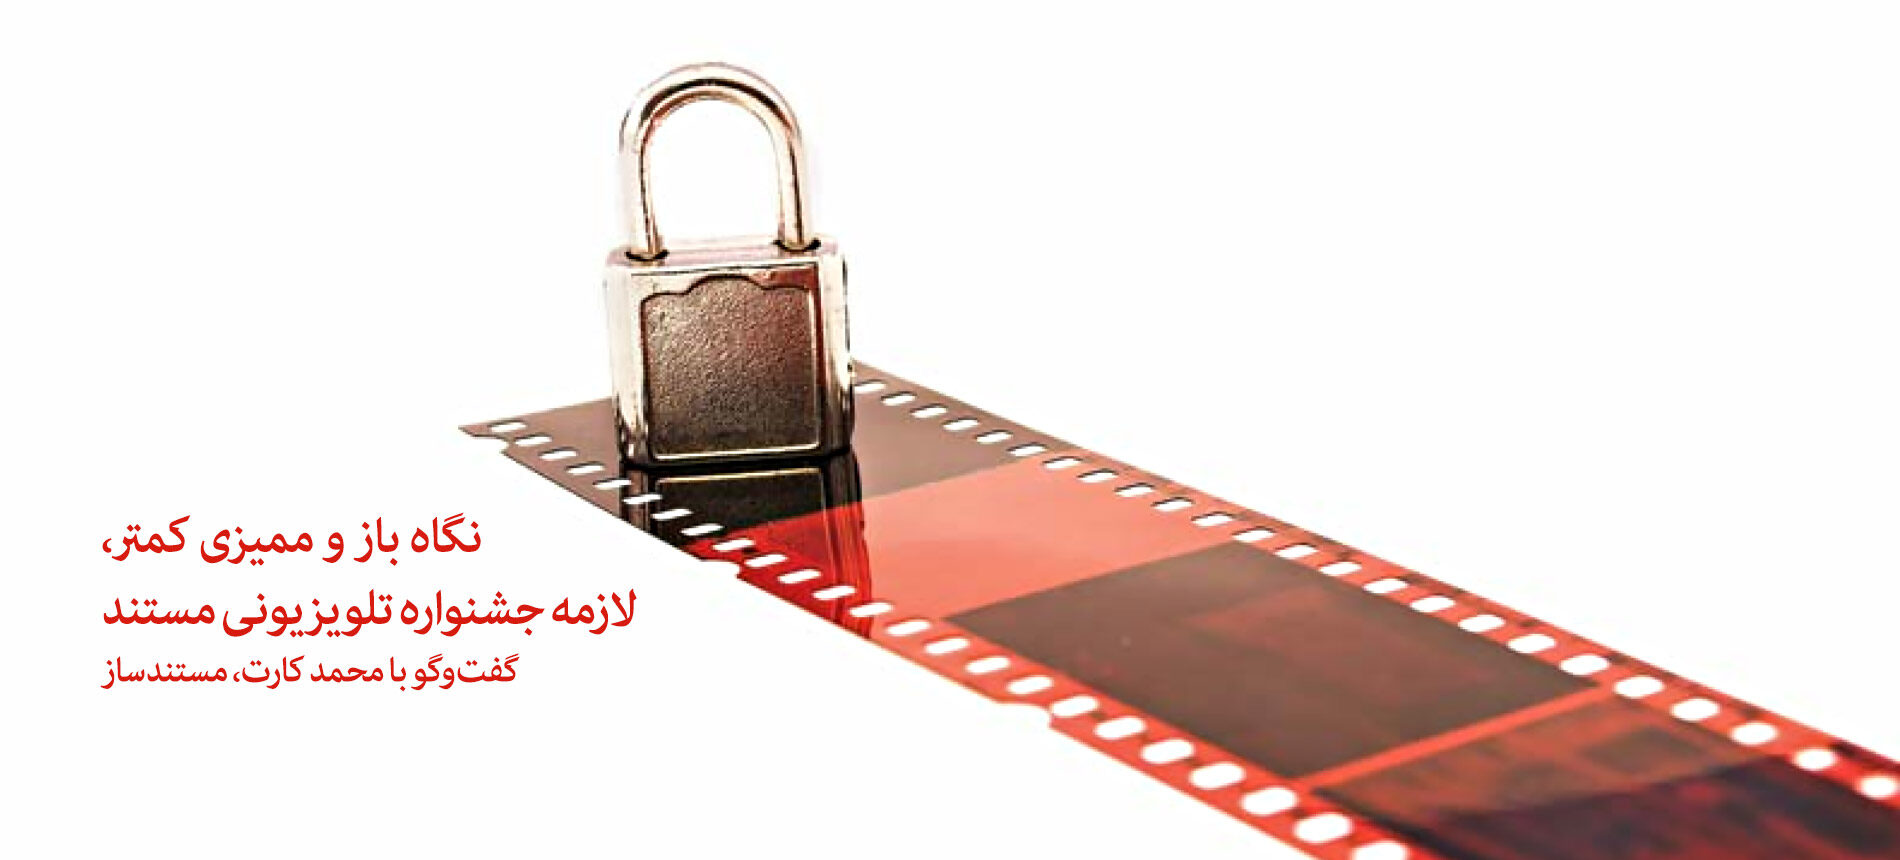 نگاه باز و ممیزی کمتر، لازمه جشنواره تلویزیونی مستند/ گفت و گو با محمد کارت، مستندساز